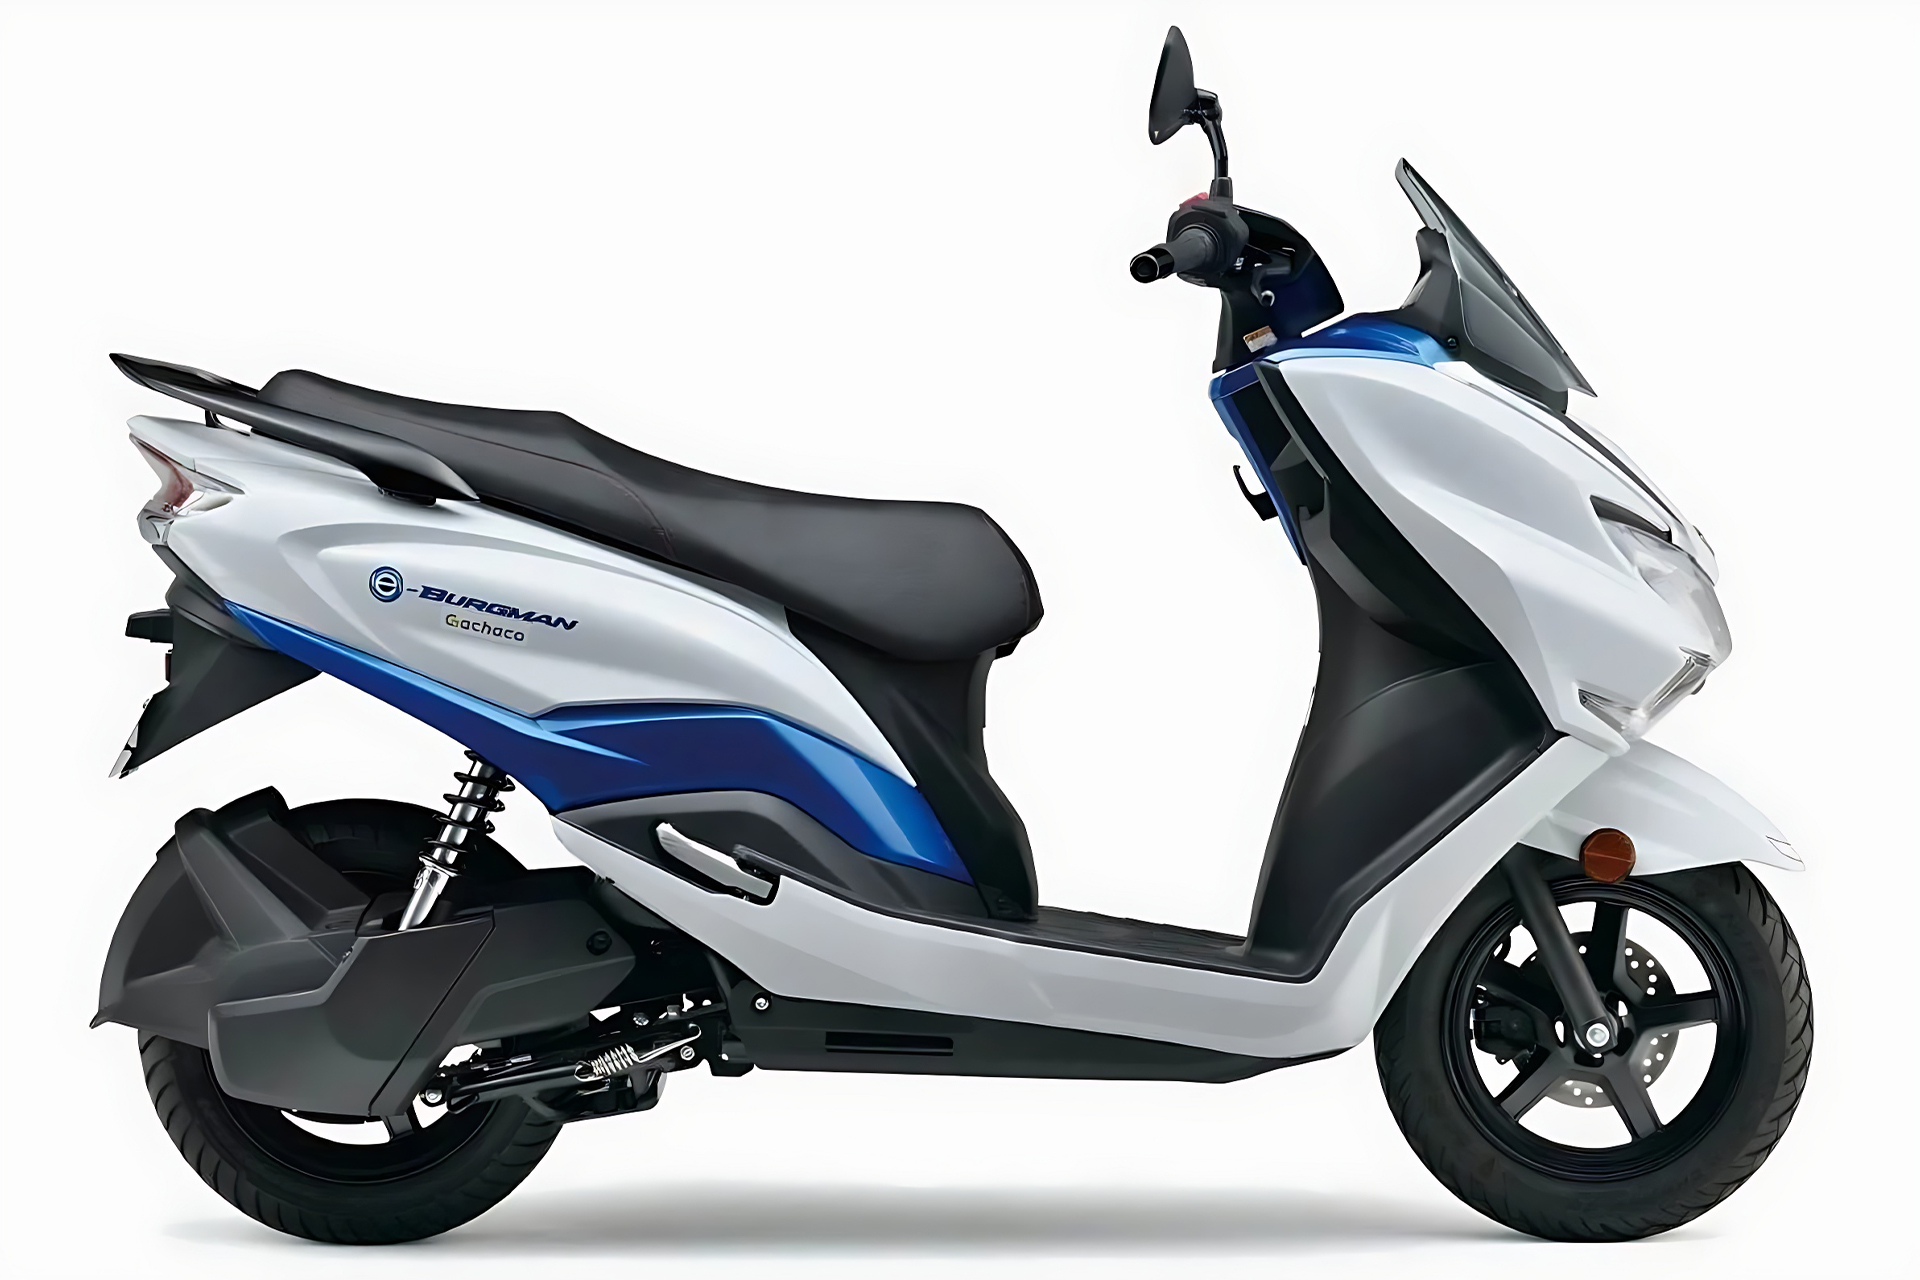 Amantes da scooter Burgman da Suzuki podem comemorar, versão 100% elétrica foi apresentada pela empresa